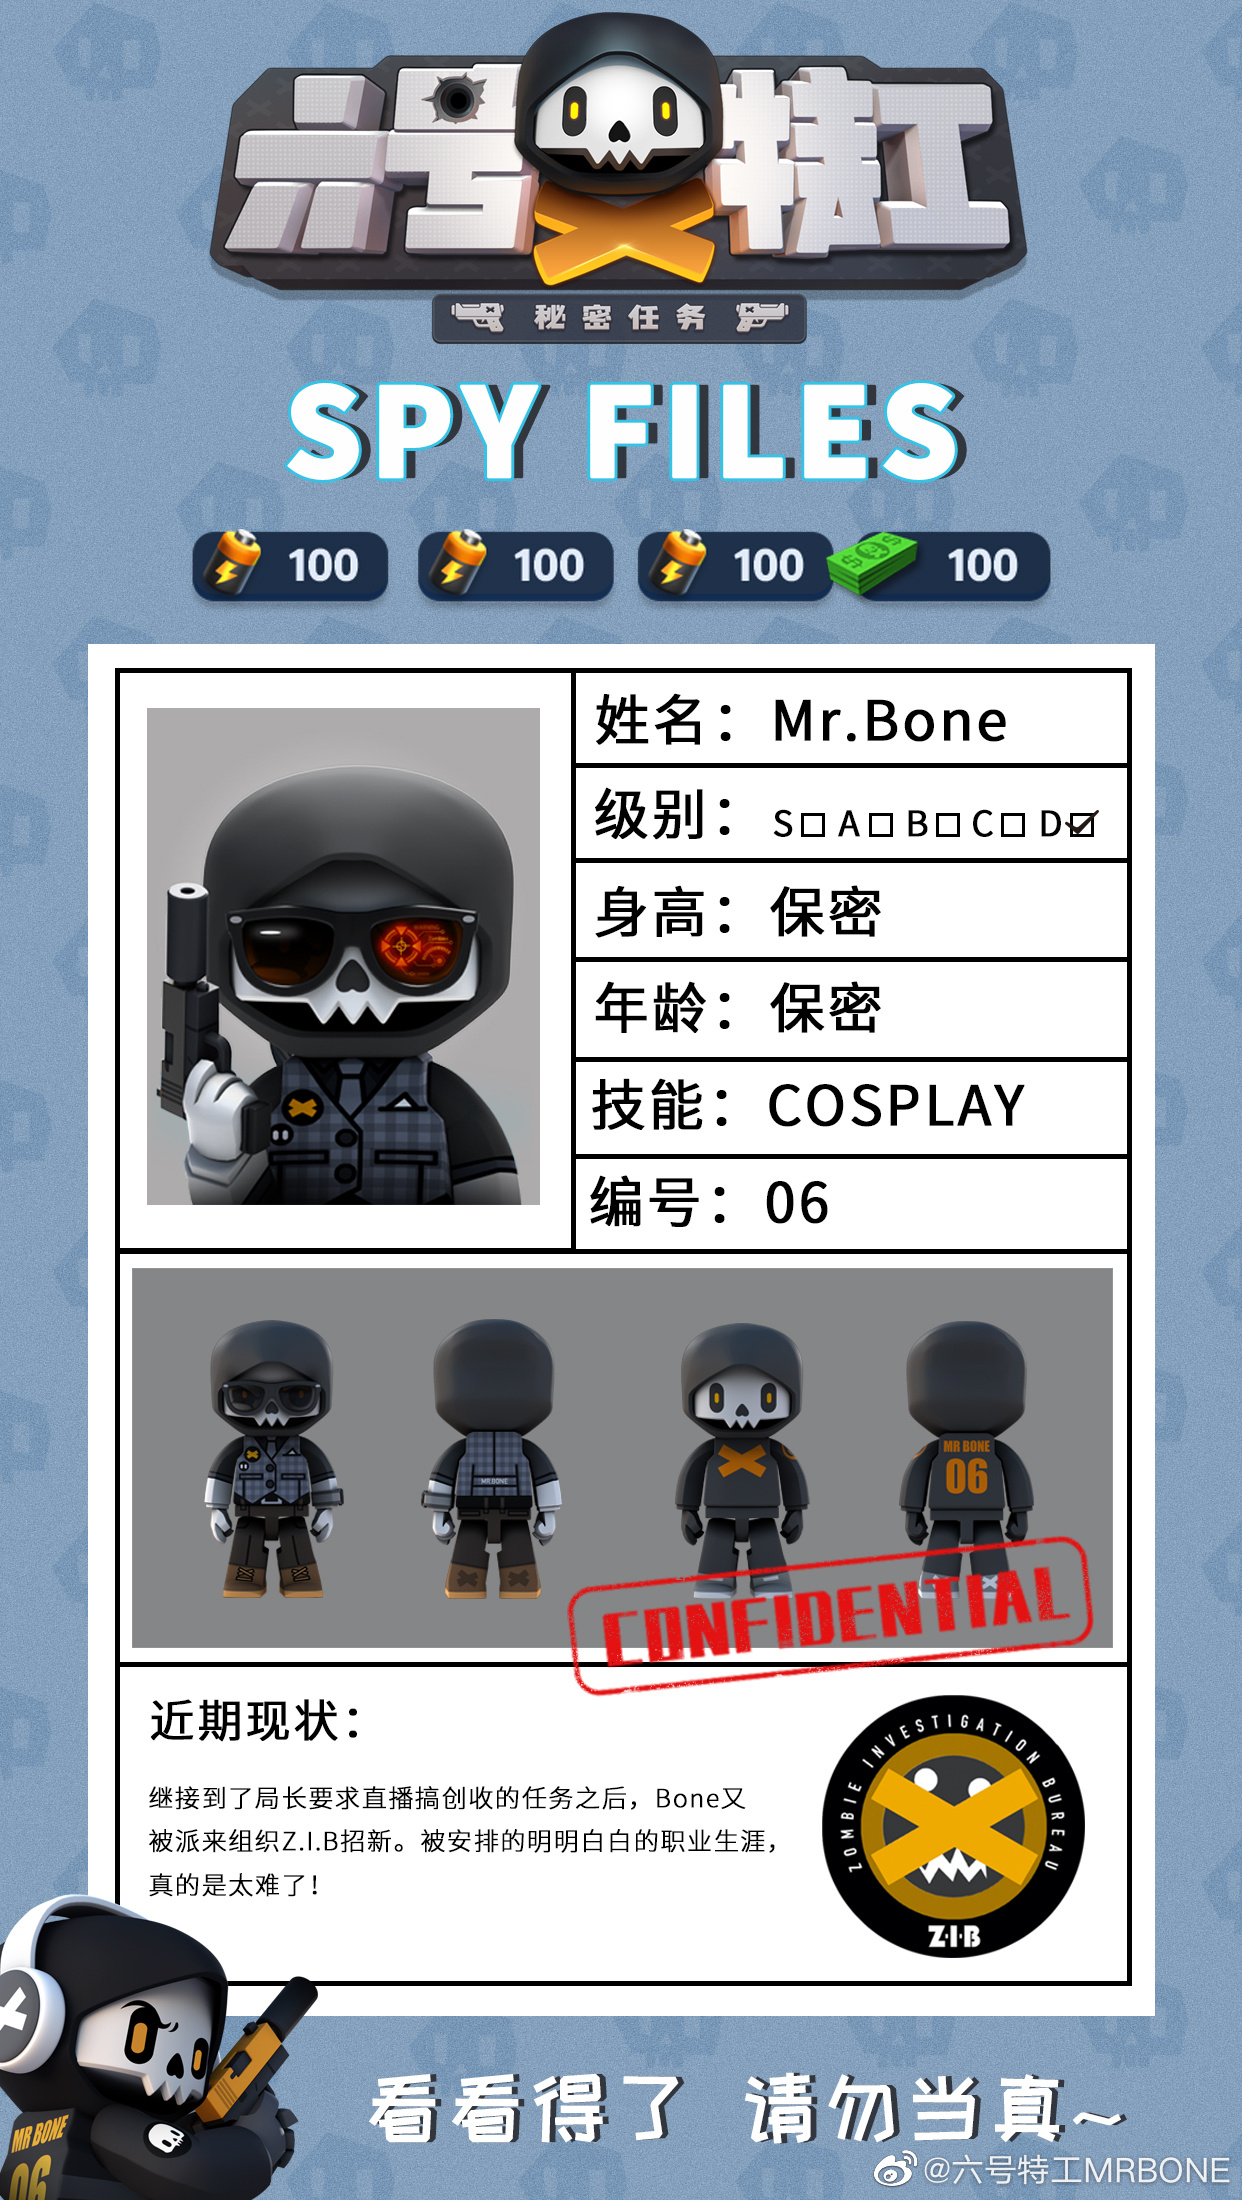 no.2 【档案人物】mr.bone 【档案等级】d 档案说明: no.